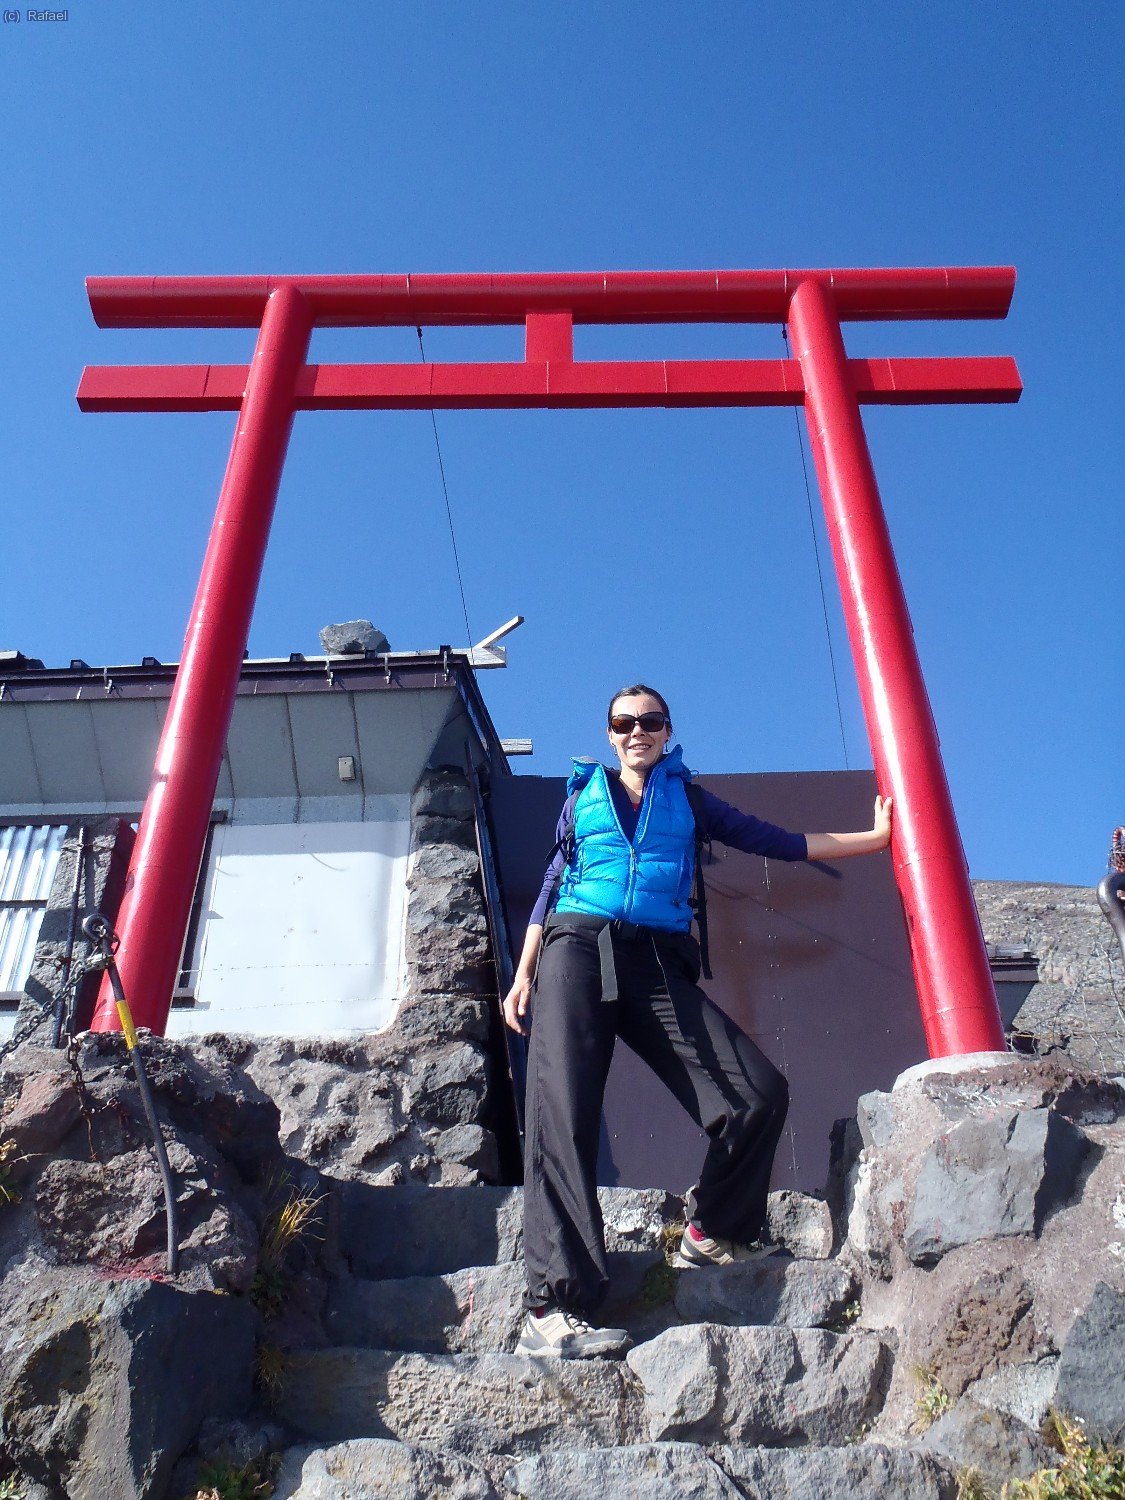 Tori ( puerta de entrada) a los templos que hay a lo largo de toda la ruta. Fuji-san es una montaña sagrada de peregrinación.
